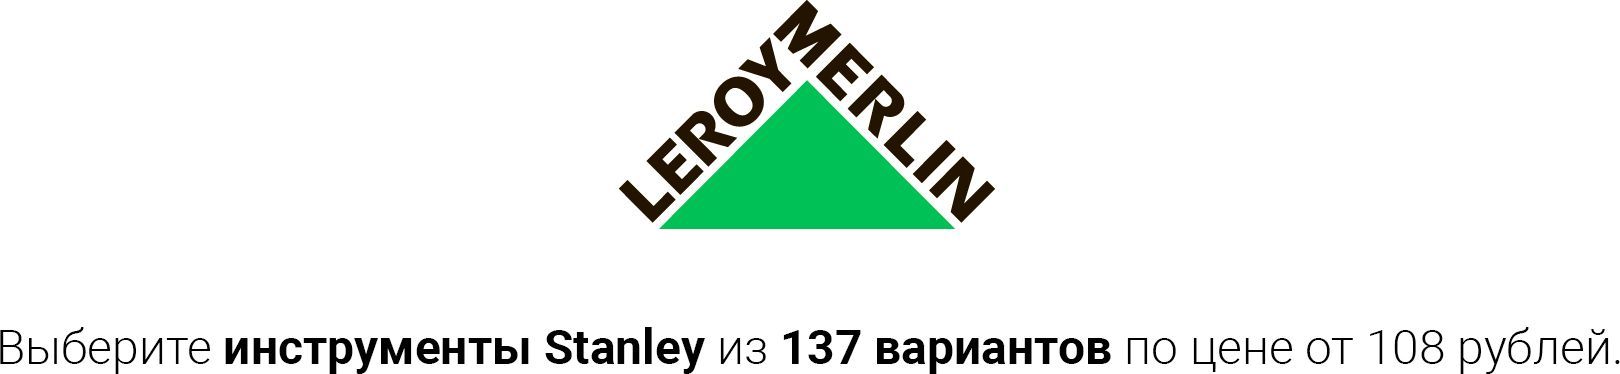 купить товары Stanley в Leroy Merlin